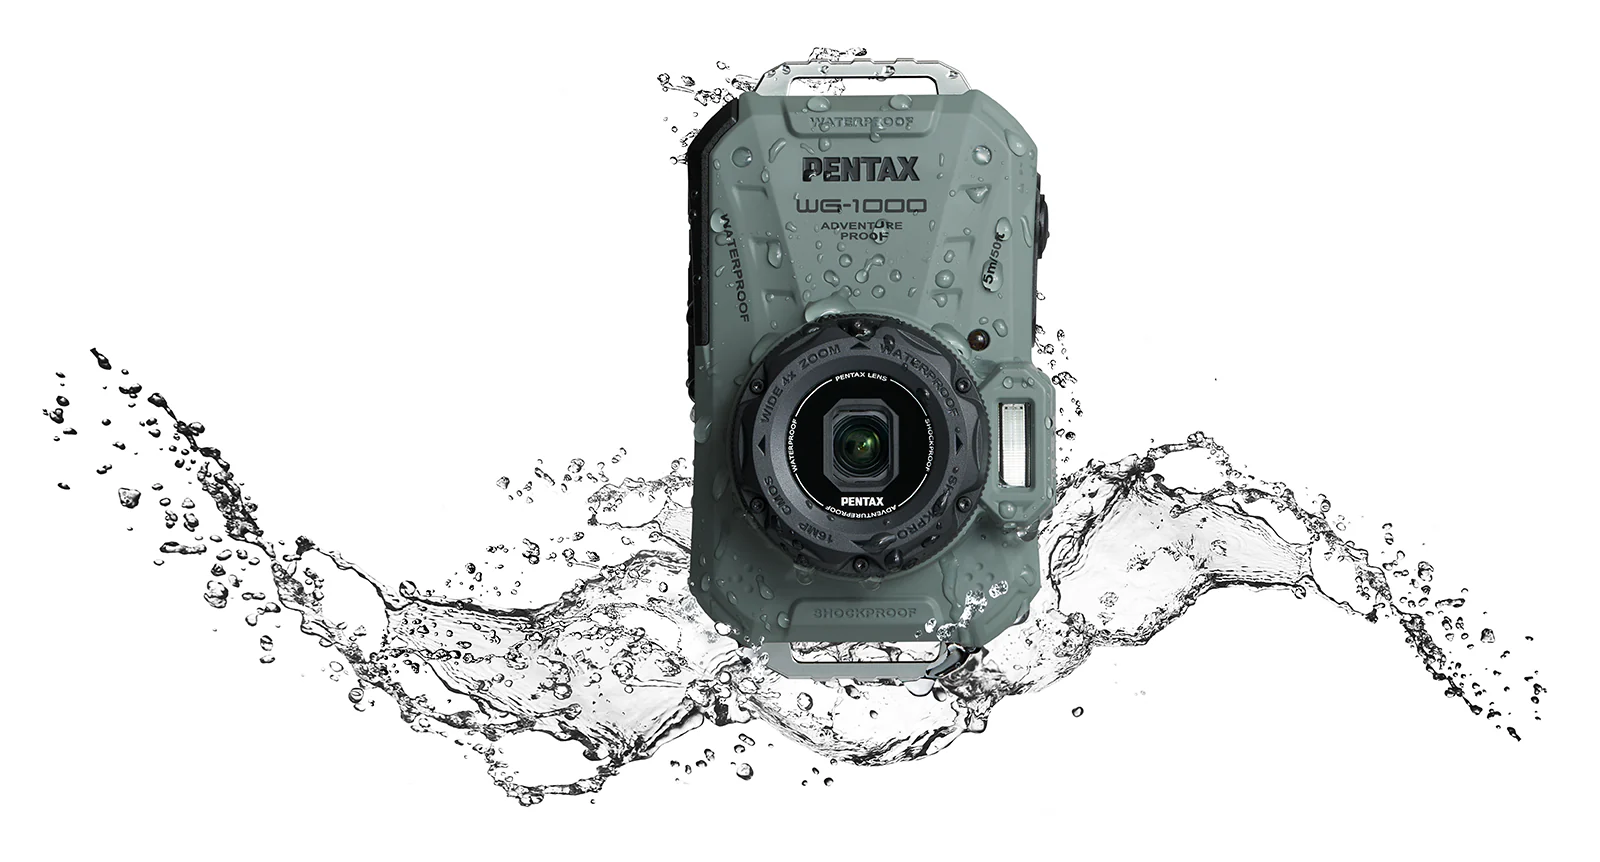 PENTAX WG-1000: водонепроницаемая компактная фотокамера начального уровня для подводной съёмки на глубинах до 15 м